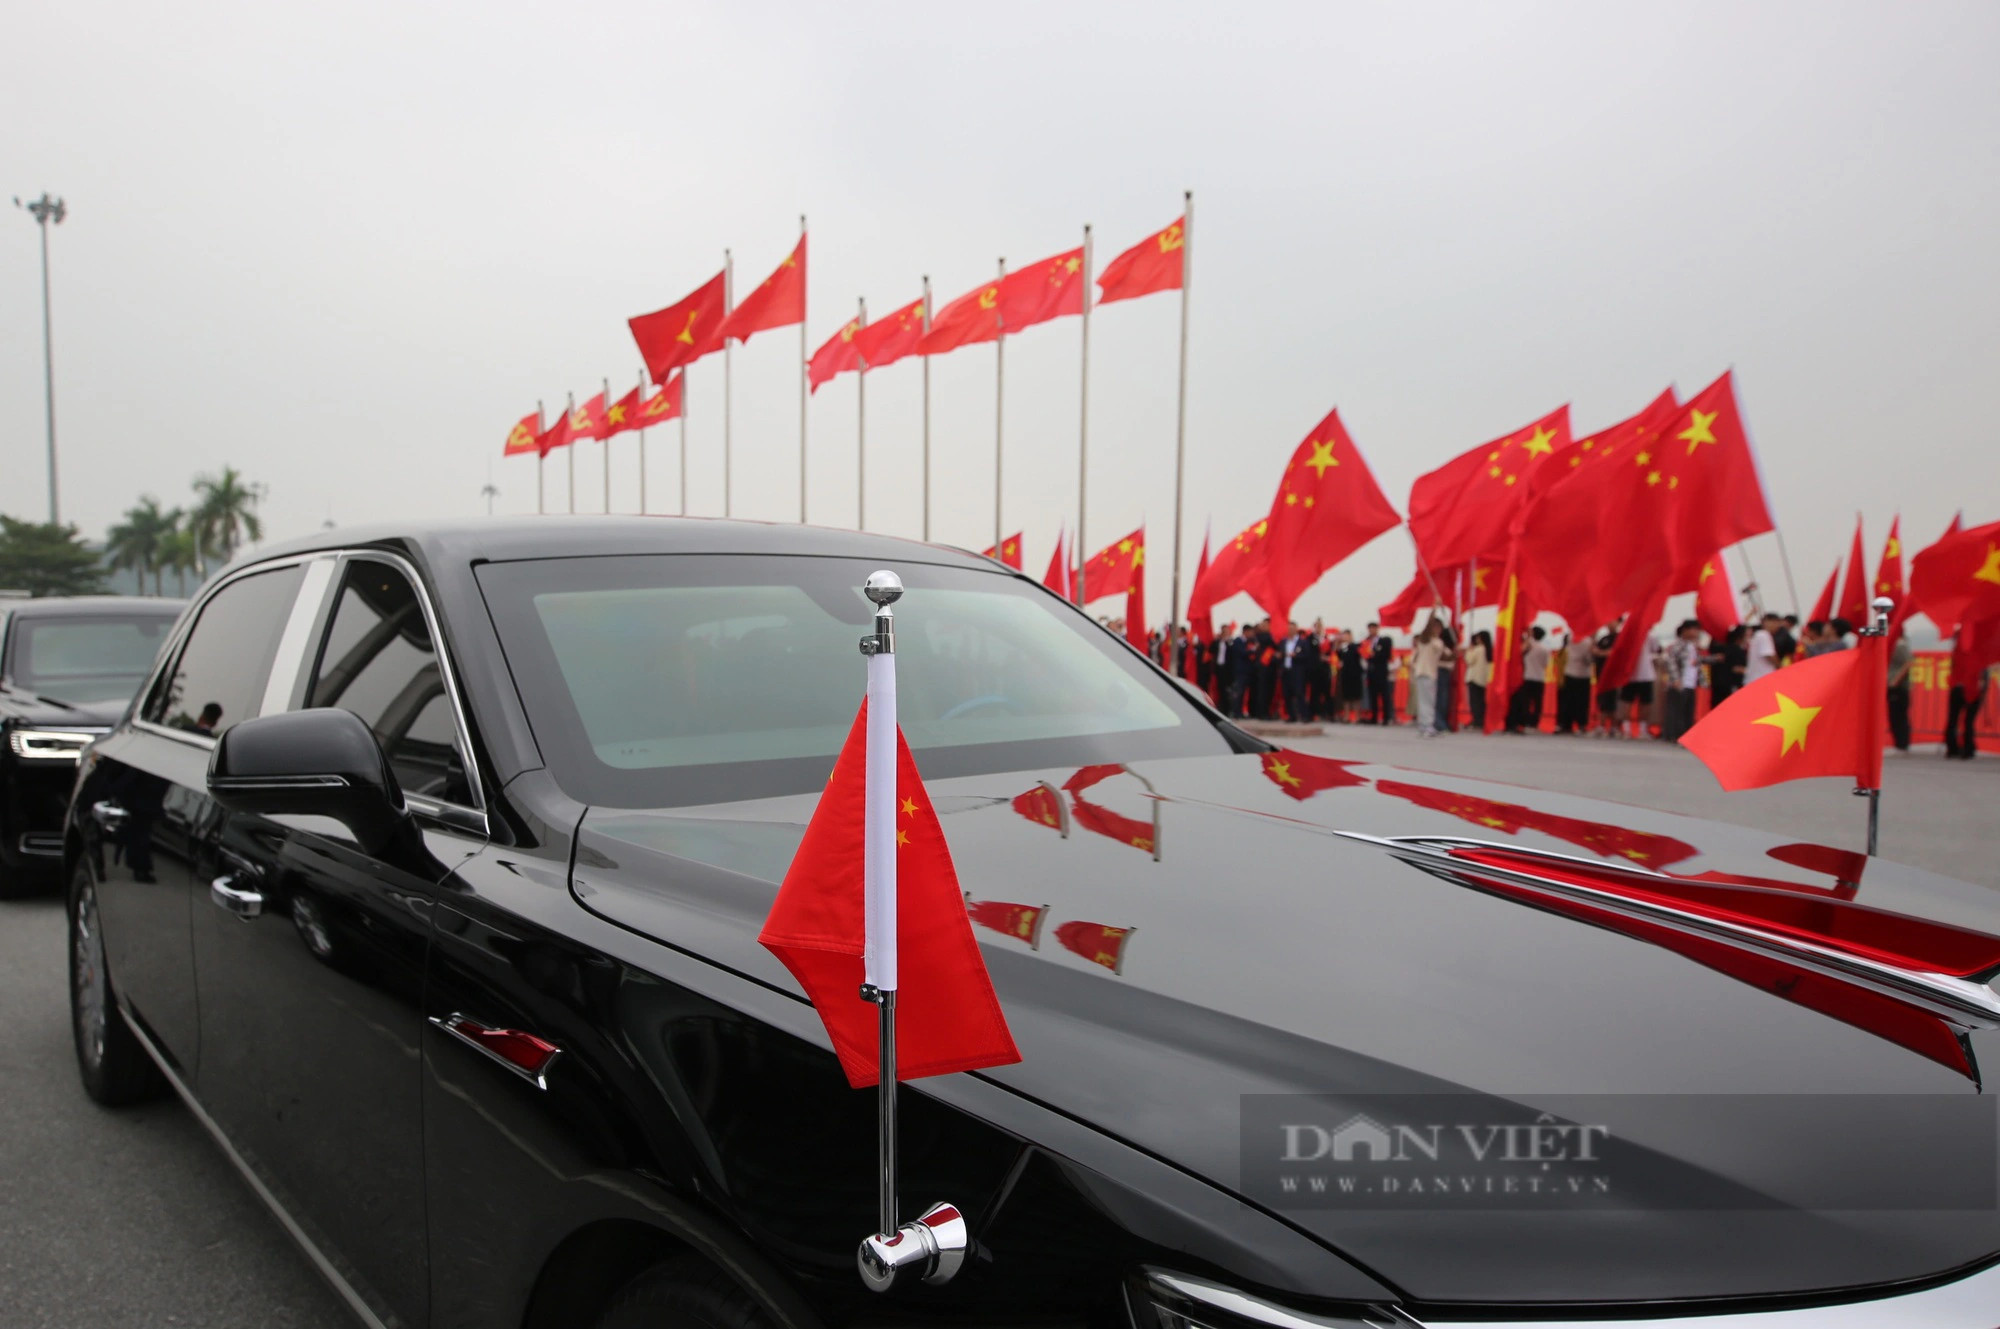 Ngắm siêu xe Hồng Kỳ N701 chở Tổng bí thư, Chủ tịch nước Tập Cận Bình trên đường phố Hà Nội - Ảnh 6.